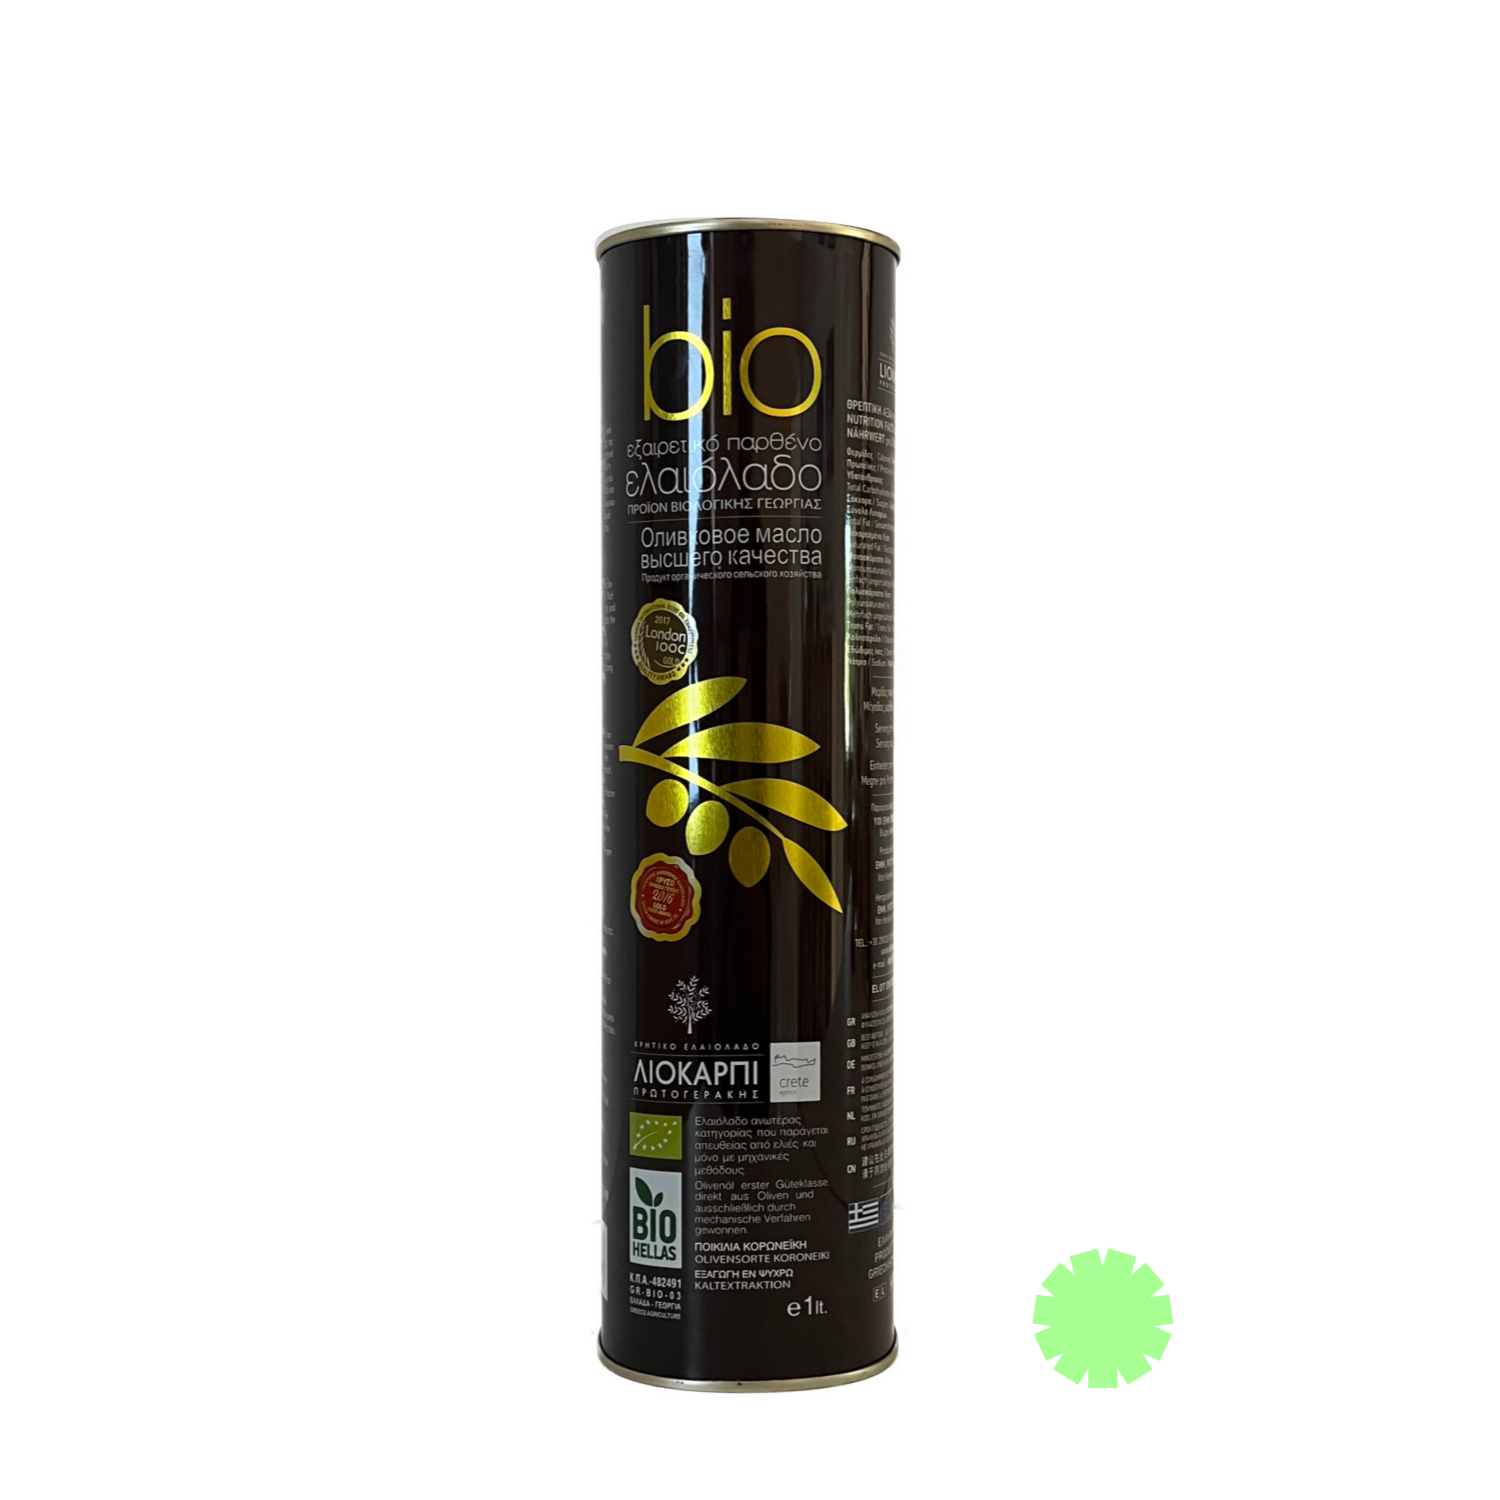 Liokarpi・ Kretisches Olivenöl・1000 ml